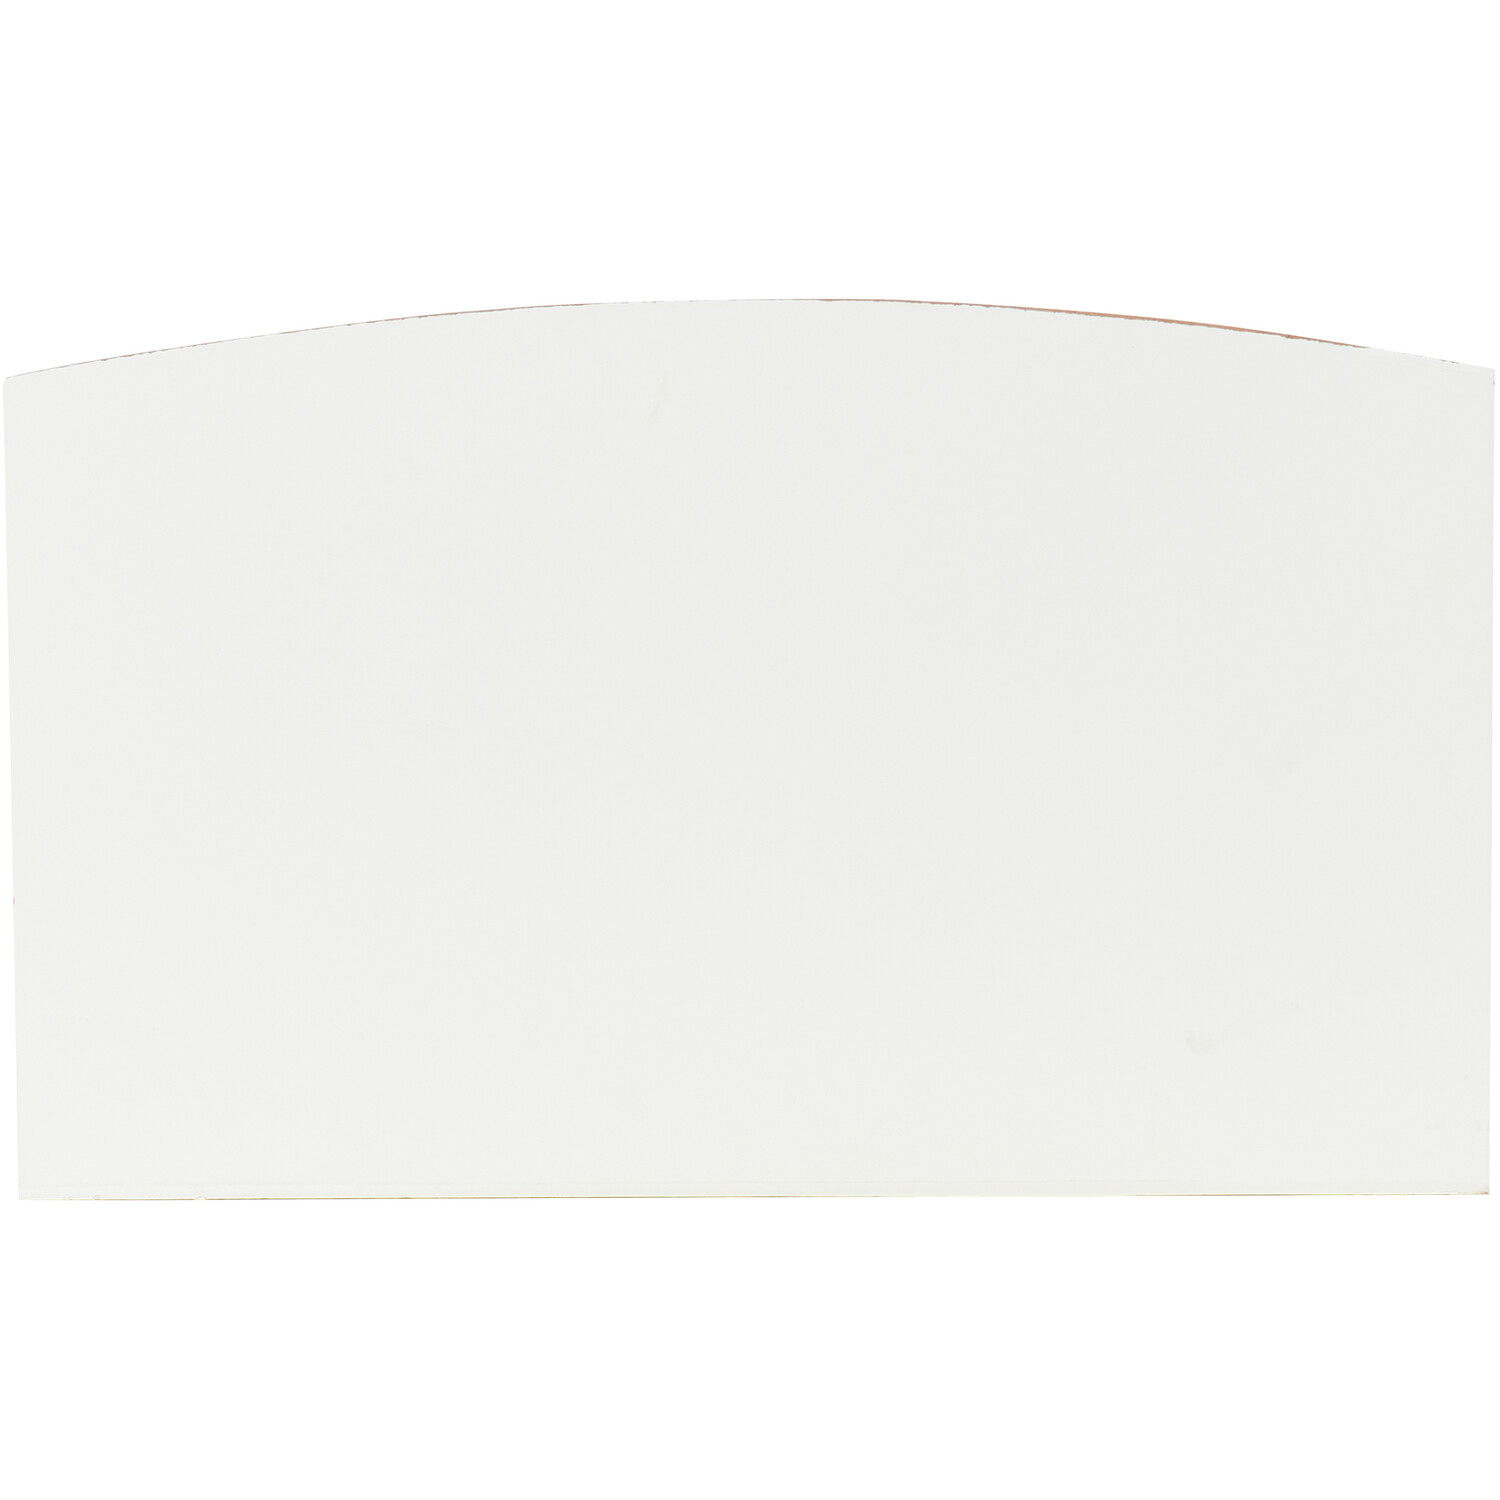 Rustic Letter Holder - White Image 4